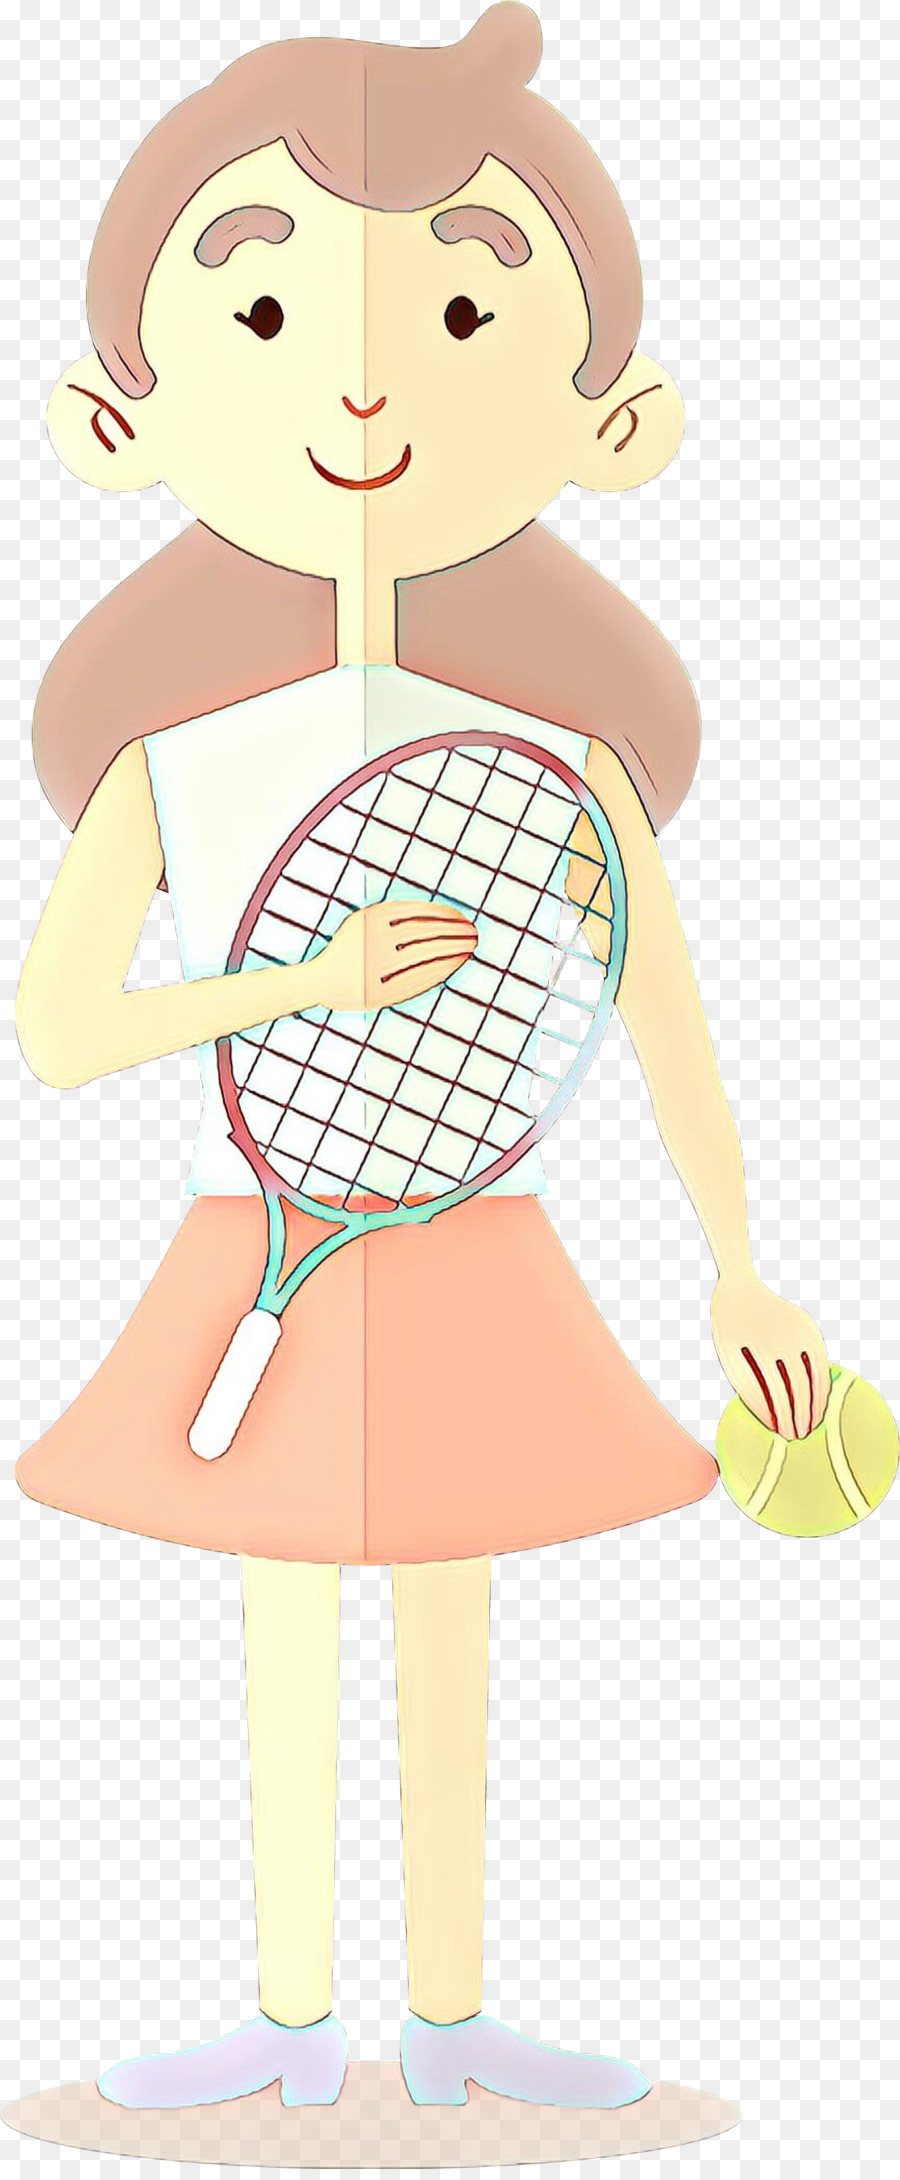 racchetta da tennis racchetta cartoon tennis tennis - 